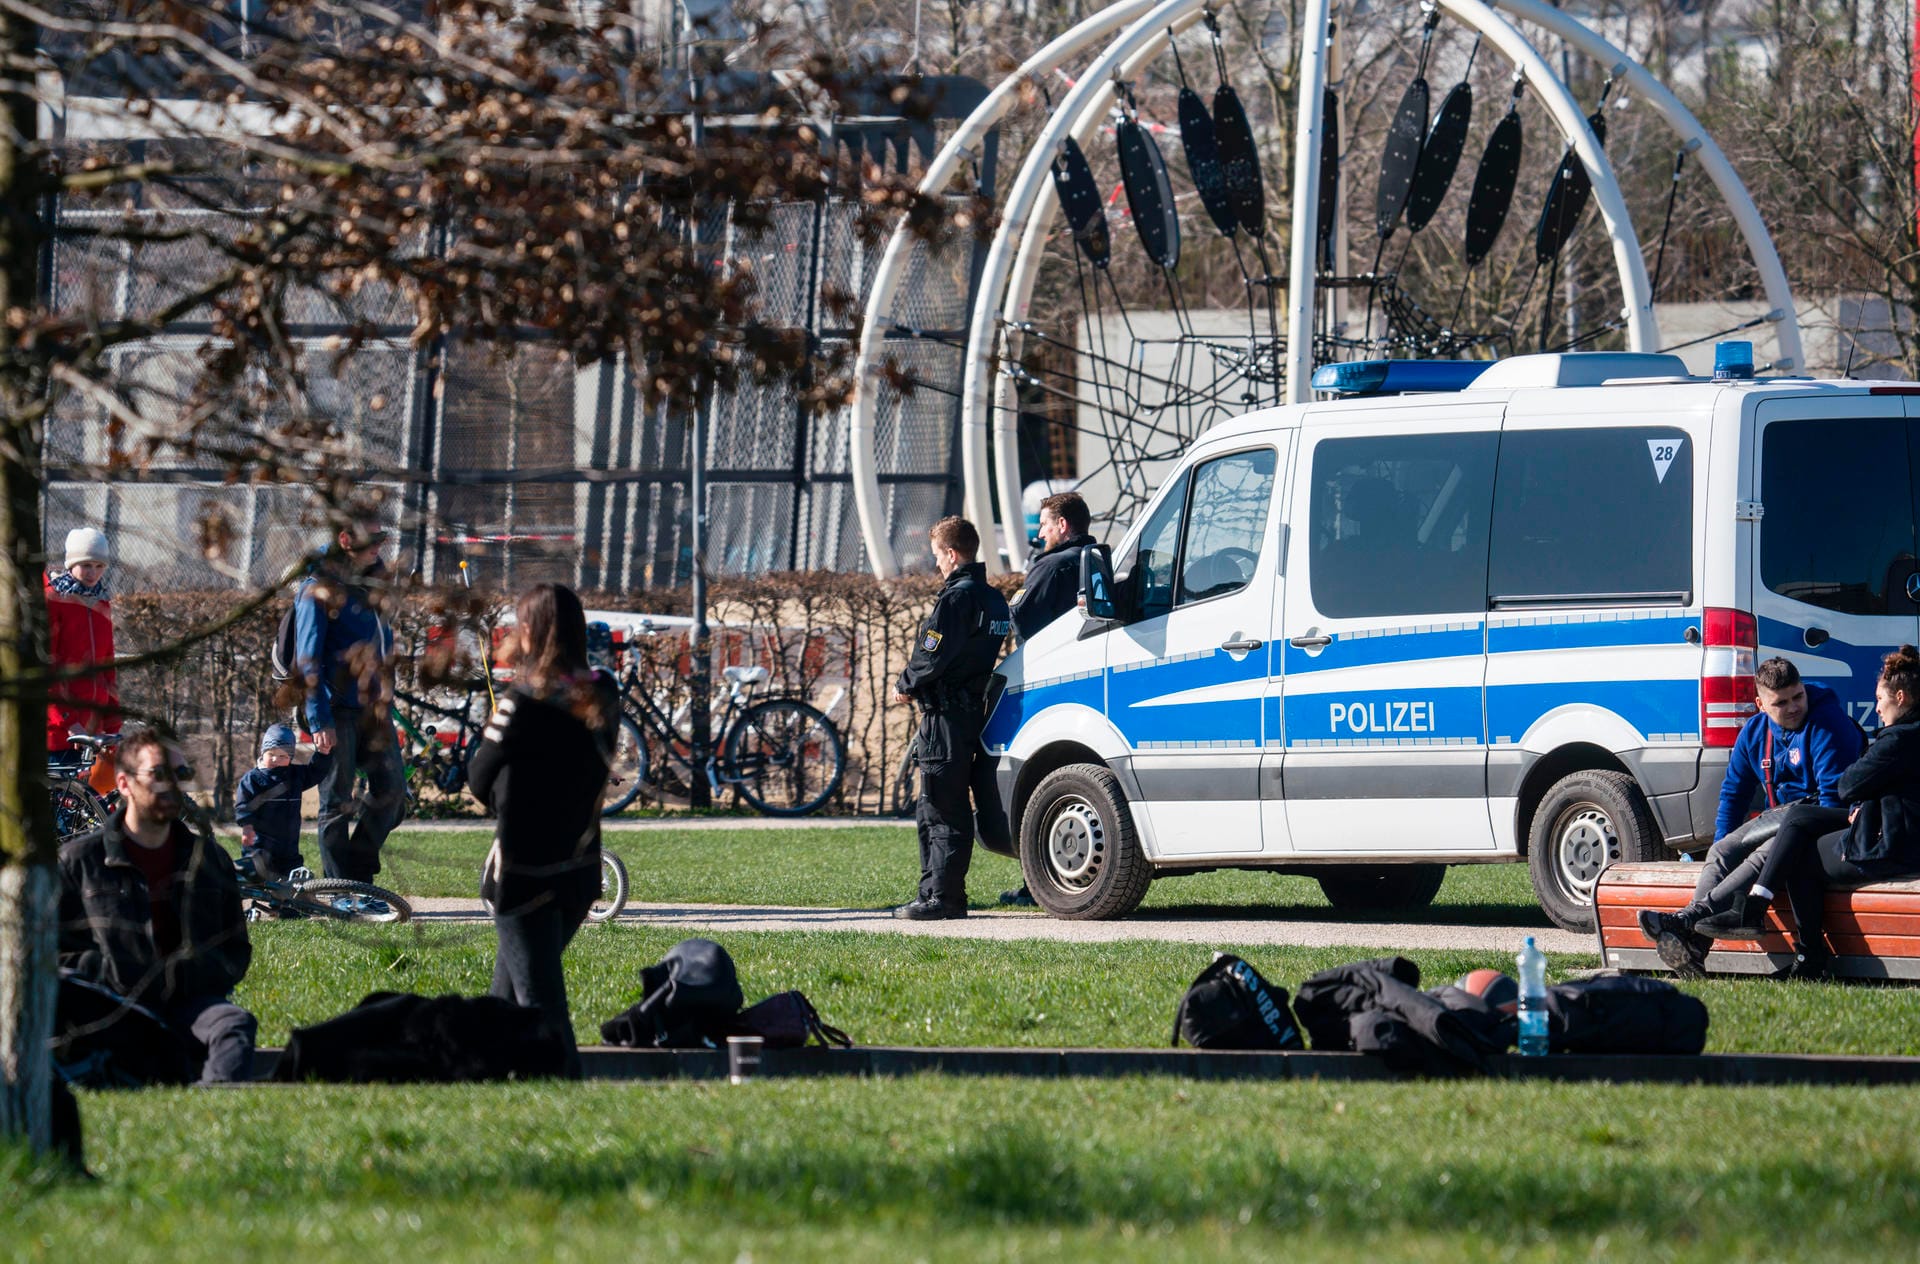 Polizisten stehen in der Freizeit- und Sportanlage Hafenpark: Sie kontrollieren, ob gegen die Versammlungsbestimmungen verstoßen wird.